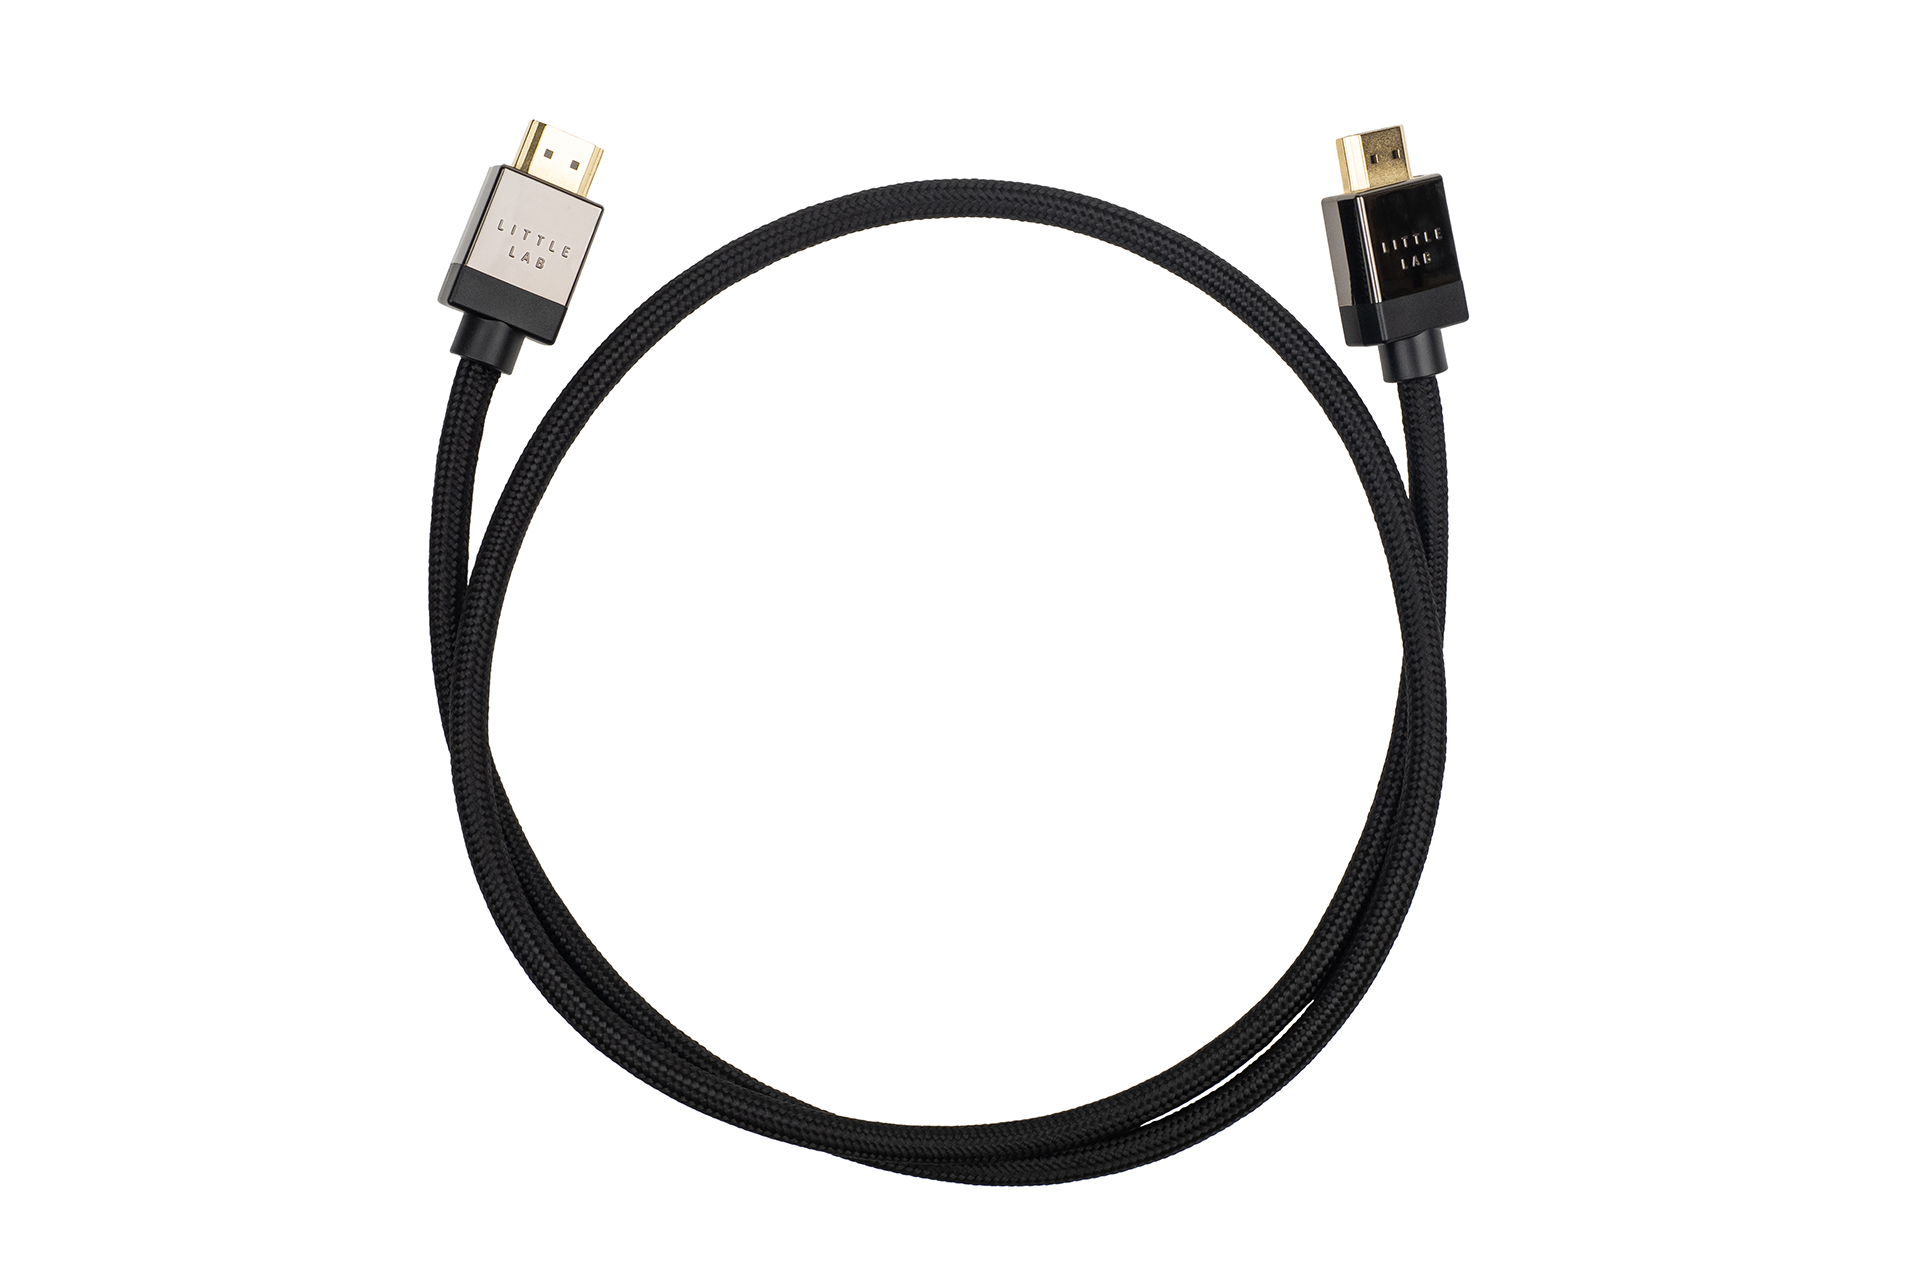 HDMI кабели Little Lab Ocean (8K/4320p/HDR/60p/48Gbps/10% Silver) X, 1.0m (LITTLELAB LL-O2-010) hdmi кабели little lab ocean 8k 4320p hdr 60p 48gbps 10% silver x 1 0m littlelab ll o2 010